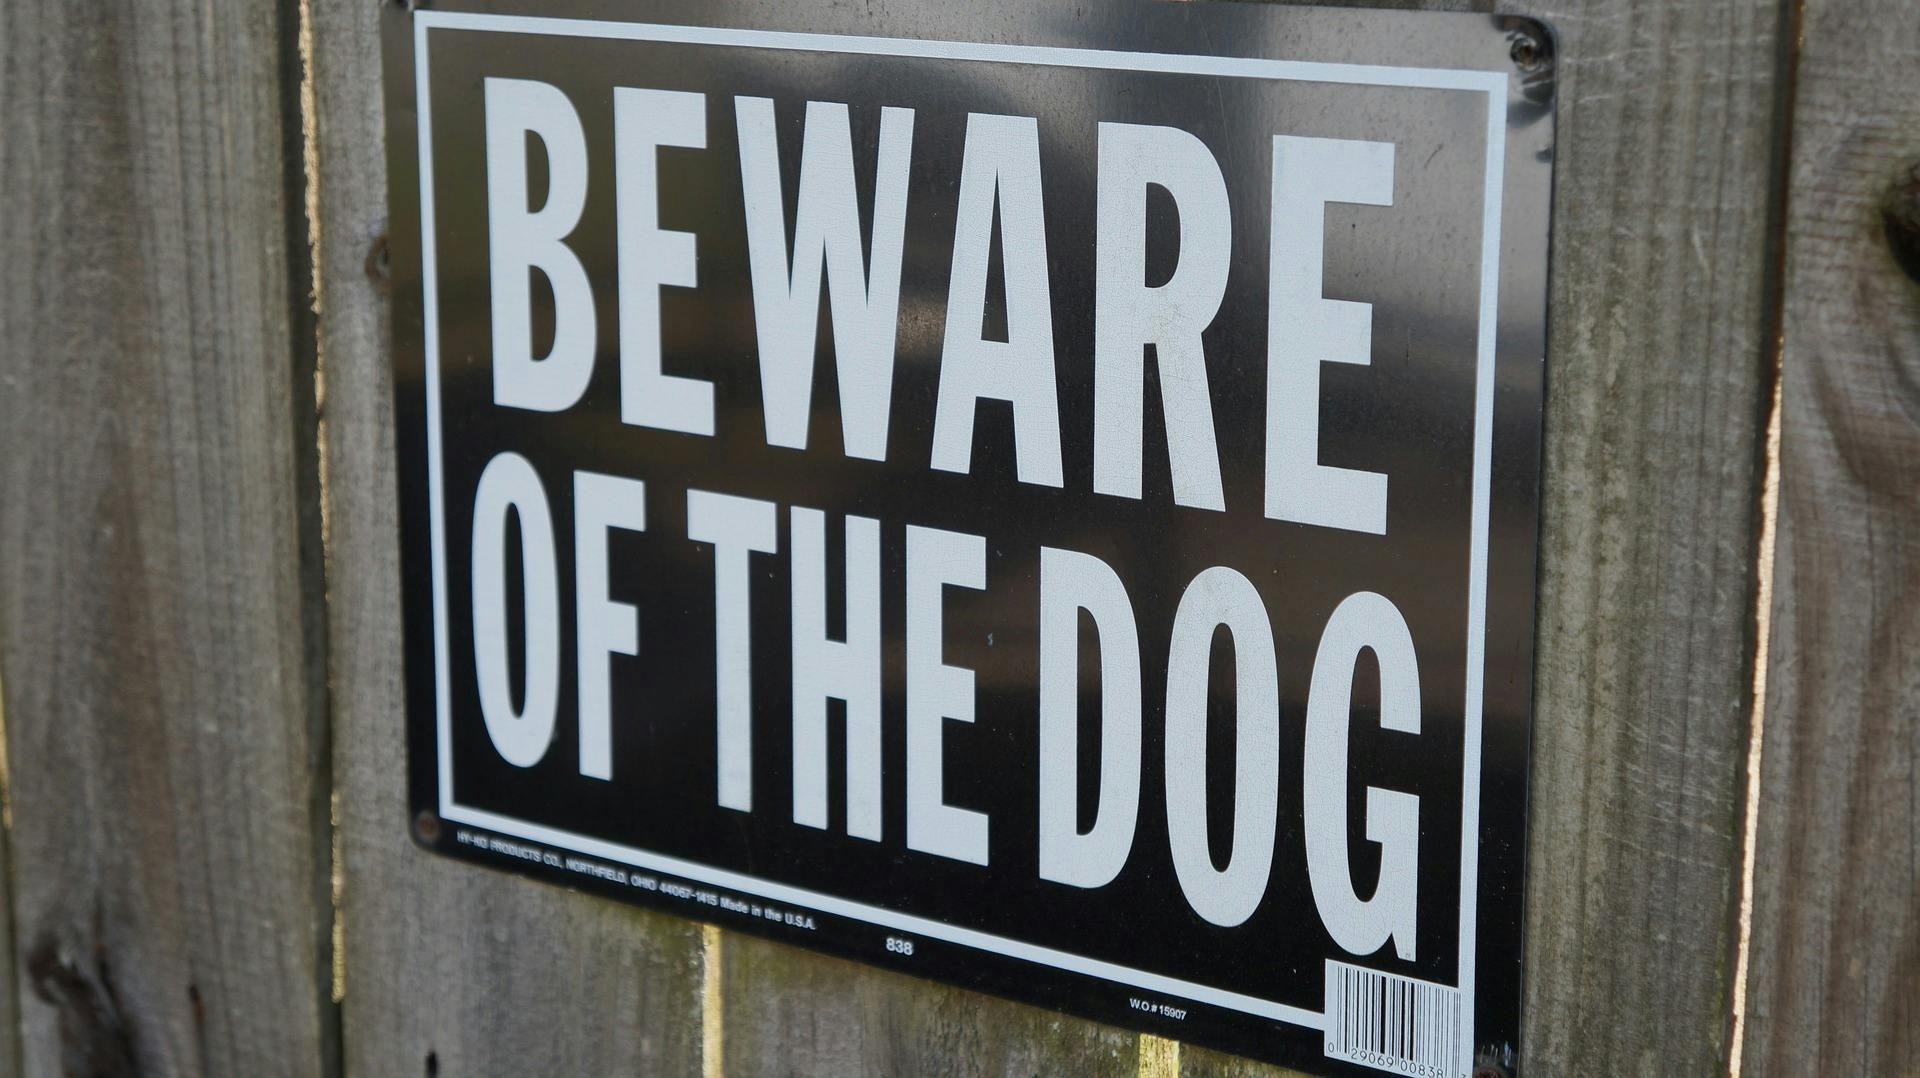 Dog bite premises liability